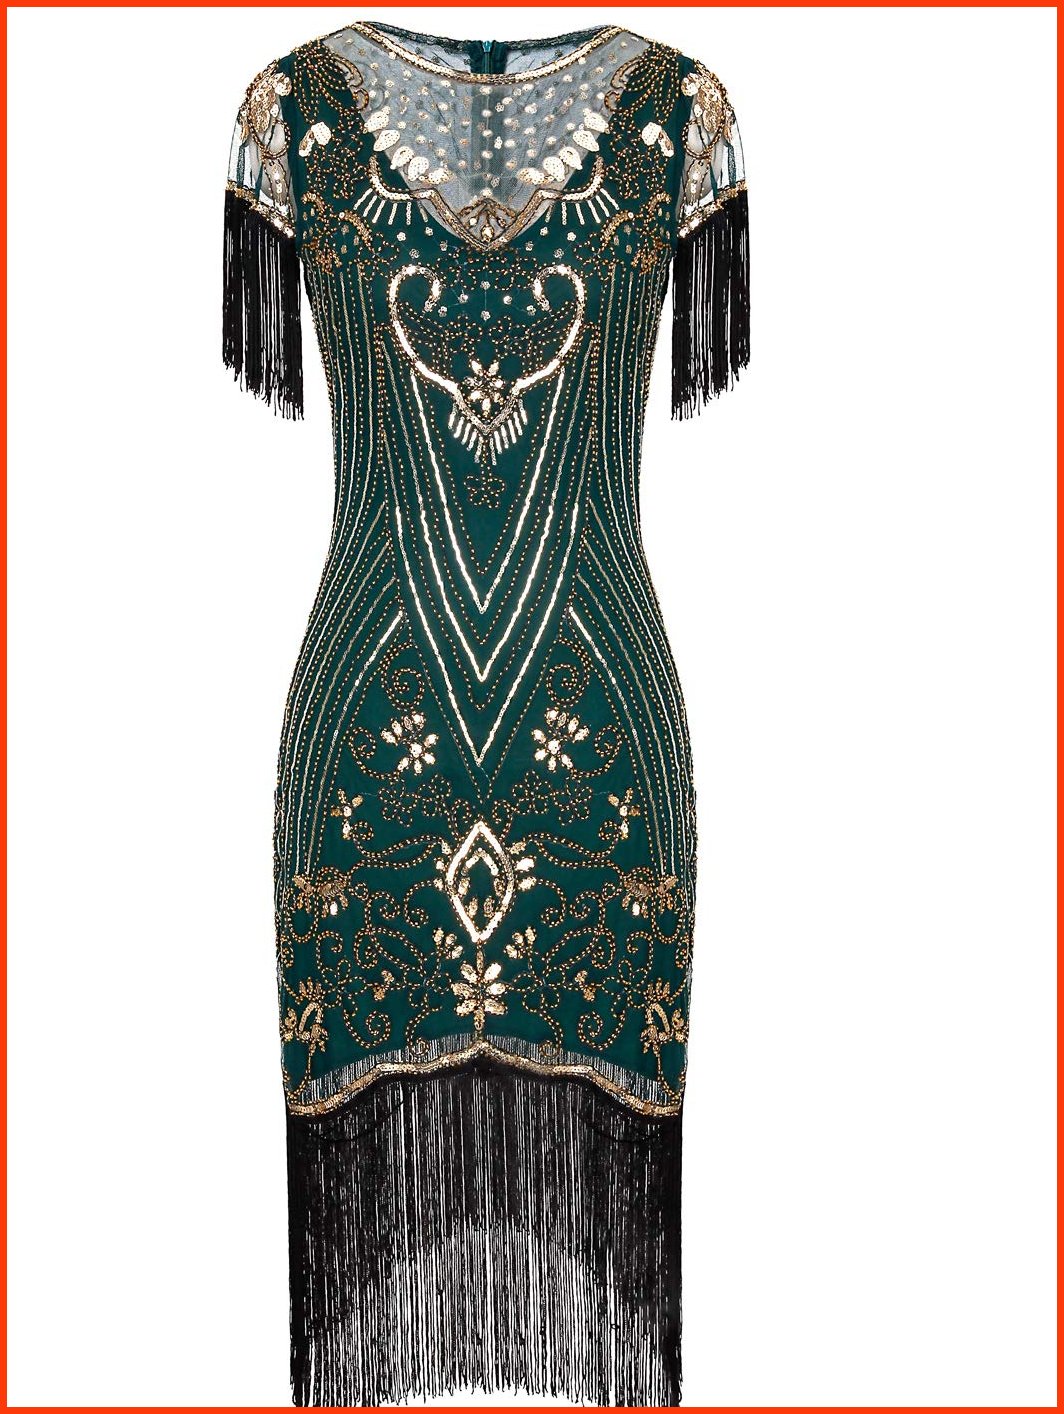 並行輸入品FAIRY COUPLE Womens 1920s Lace Neck Great Gatsby Dress Sequin Art Deco Flapper Dress with Sleeve D20S028 XL G